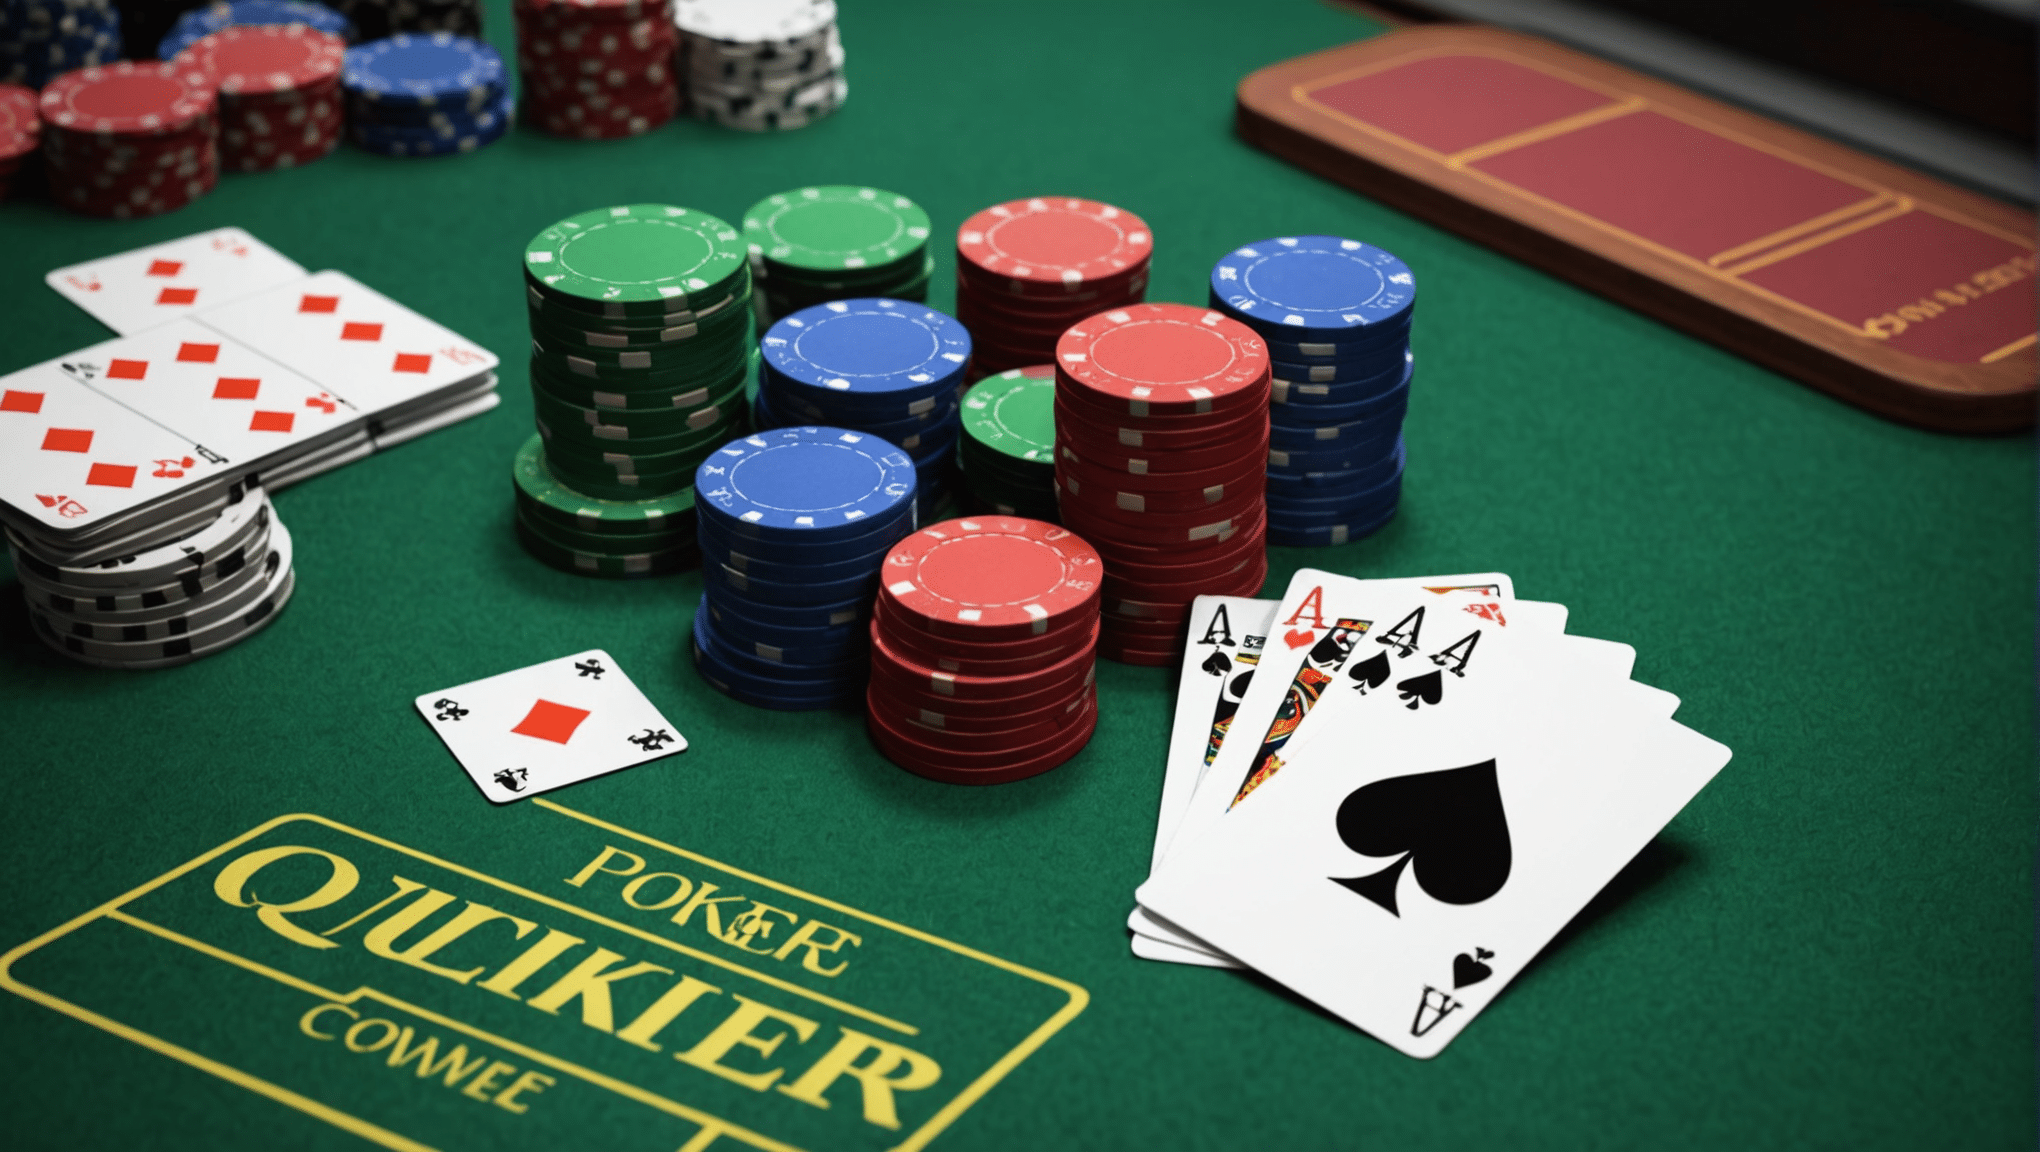 découvrez les règles de poker et les stratégies de base pour améliorer votre jeu. apprenez comment optimiser vos chances de gagner au poker grâce à des stratégies efficaces.